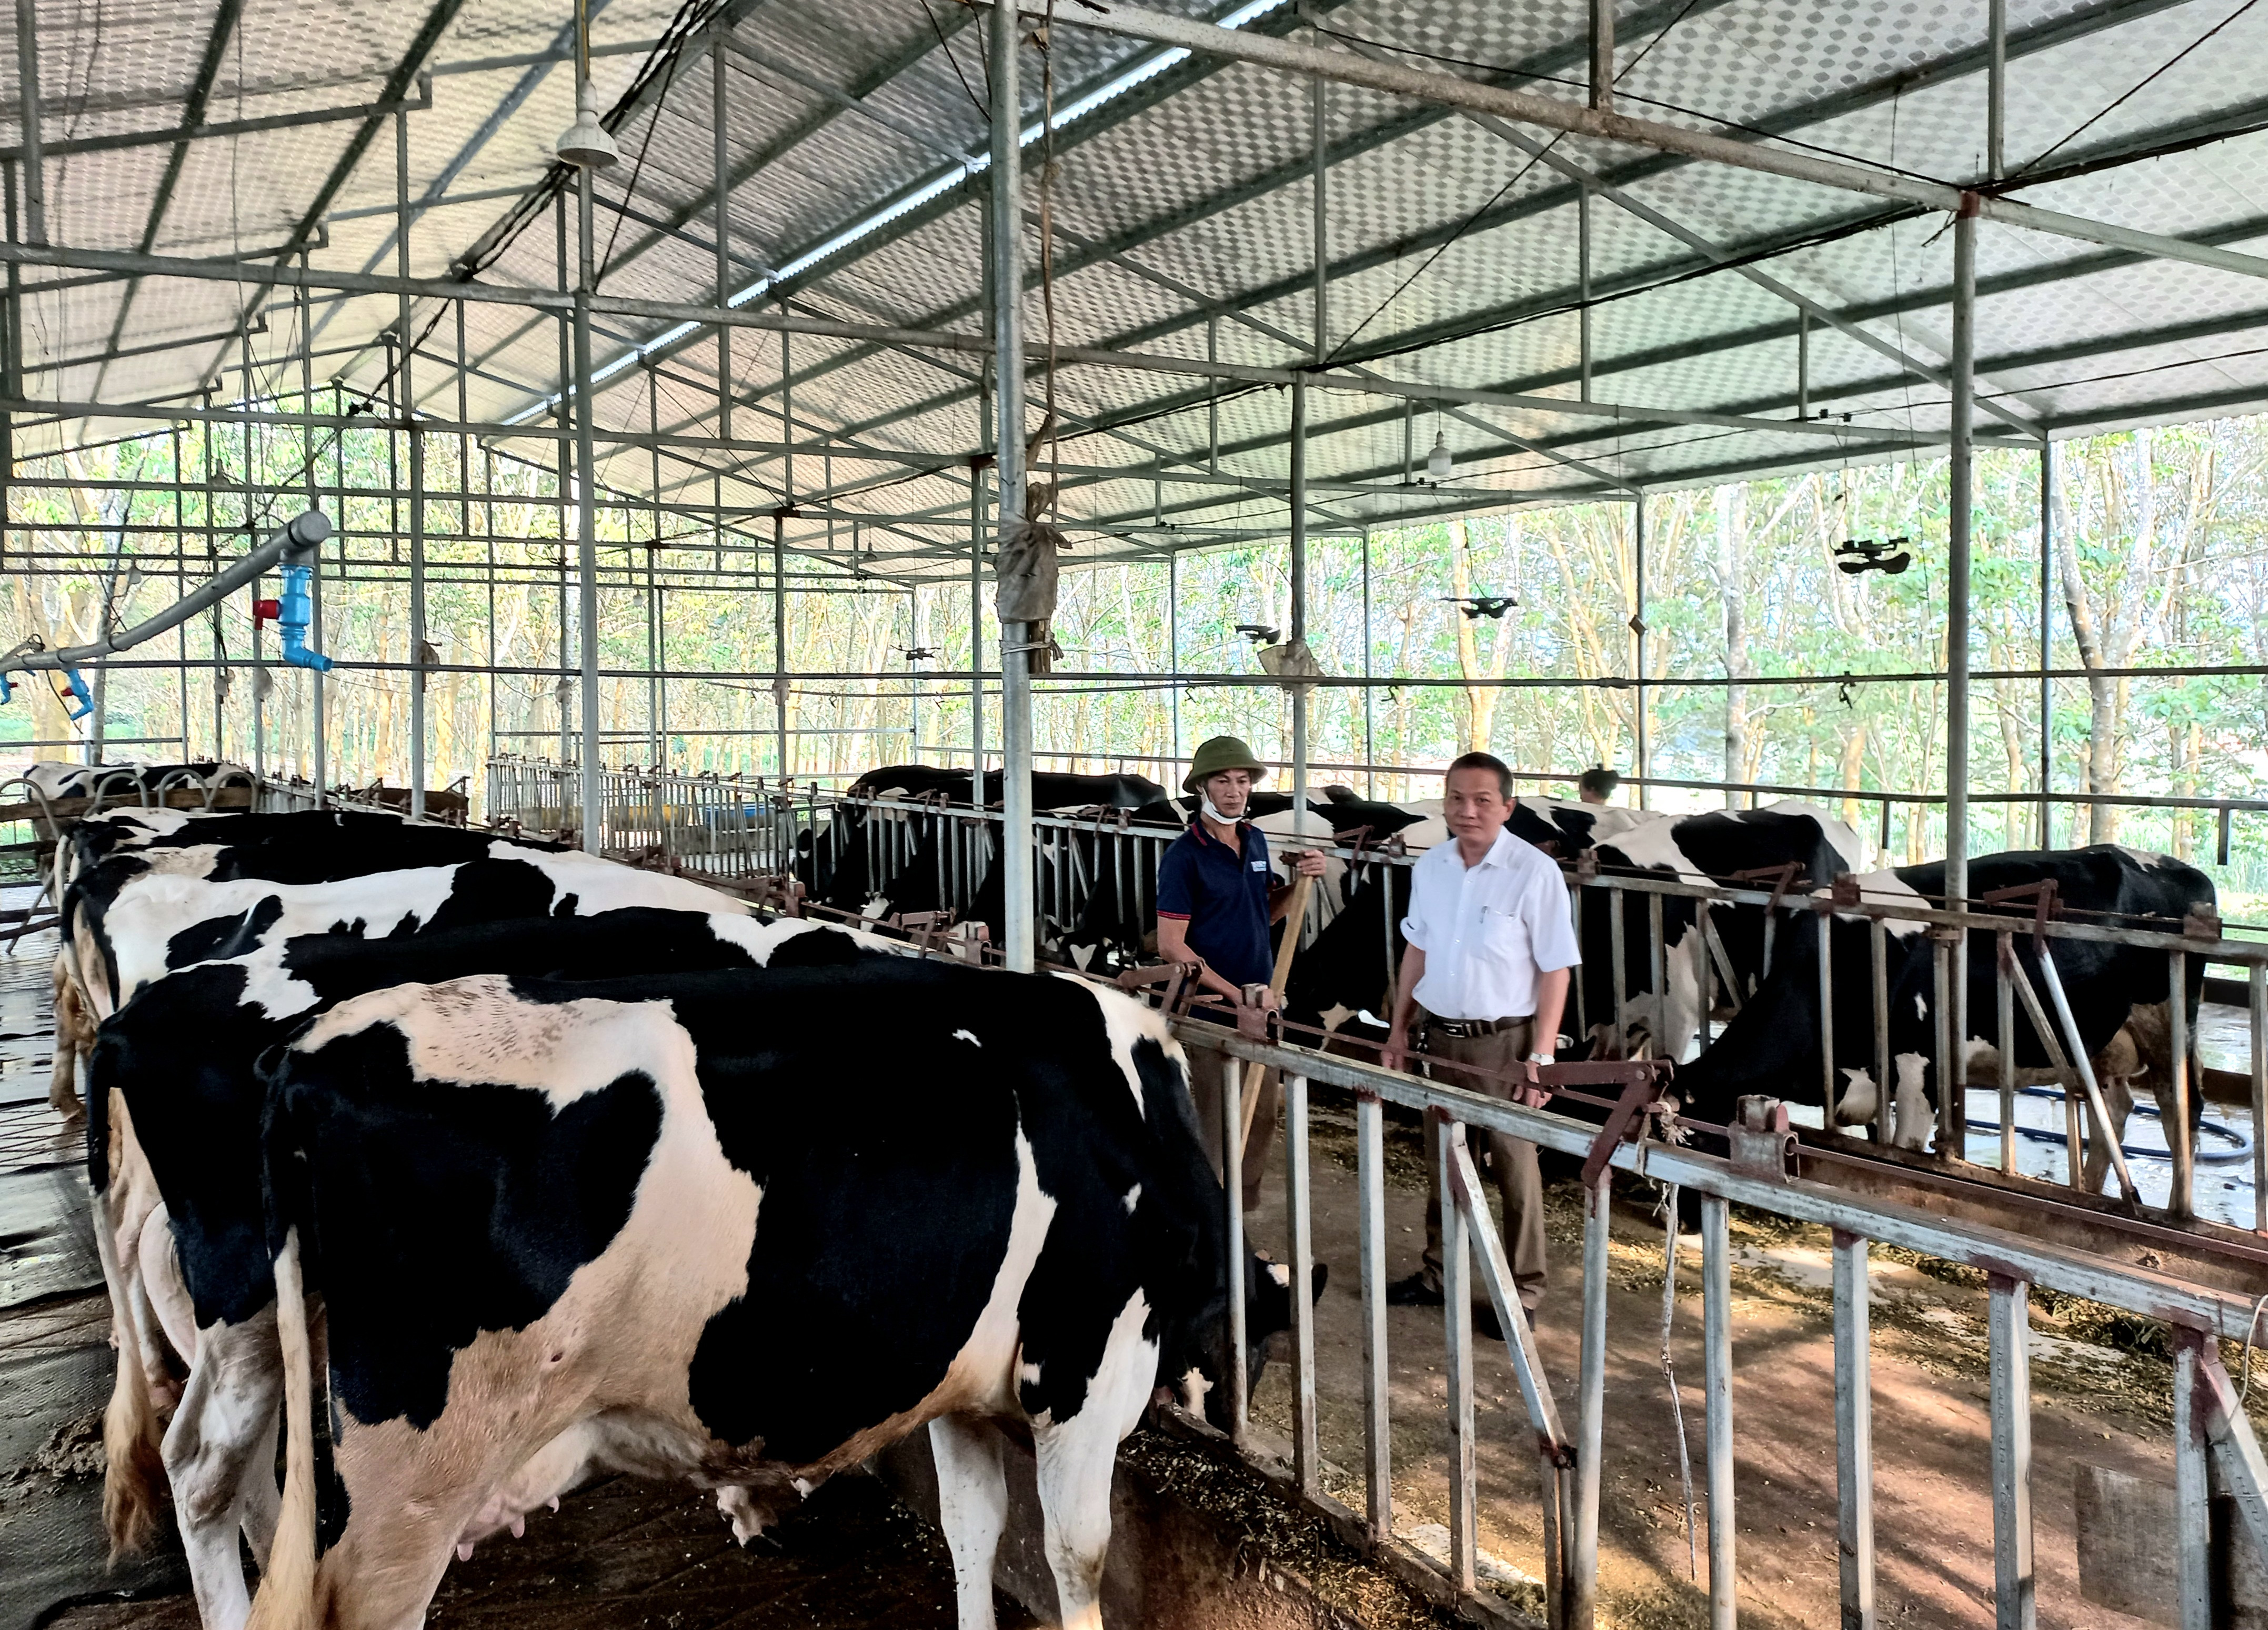 Tổng đàn bò sữa tại thị xã Thái Hòa đang có xu hứng phát triển trong những năn gần đây. Ảnh Thu Trang